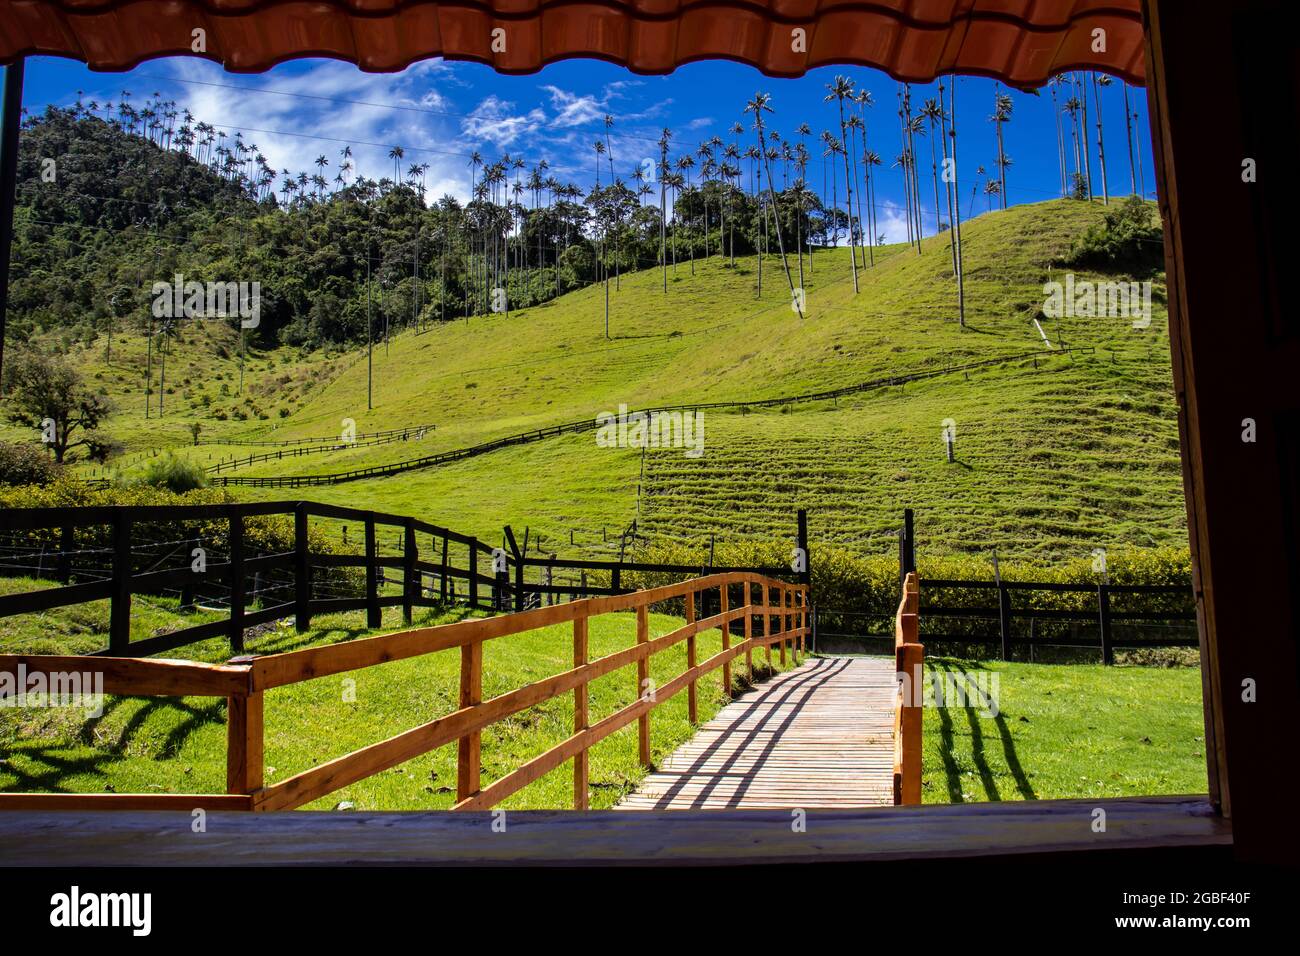 La belle vallée de Cocora dans la région de Quindio en Colombie vue par la fenêtre Banque D'Images